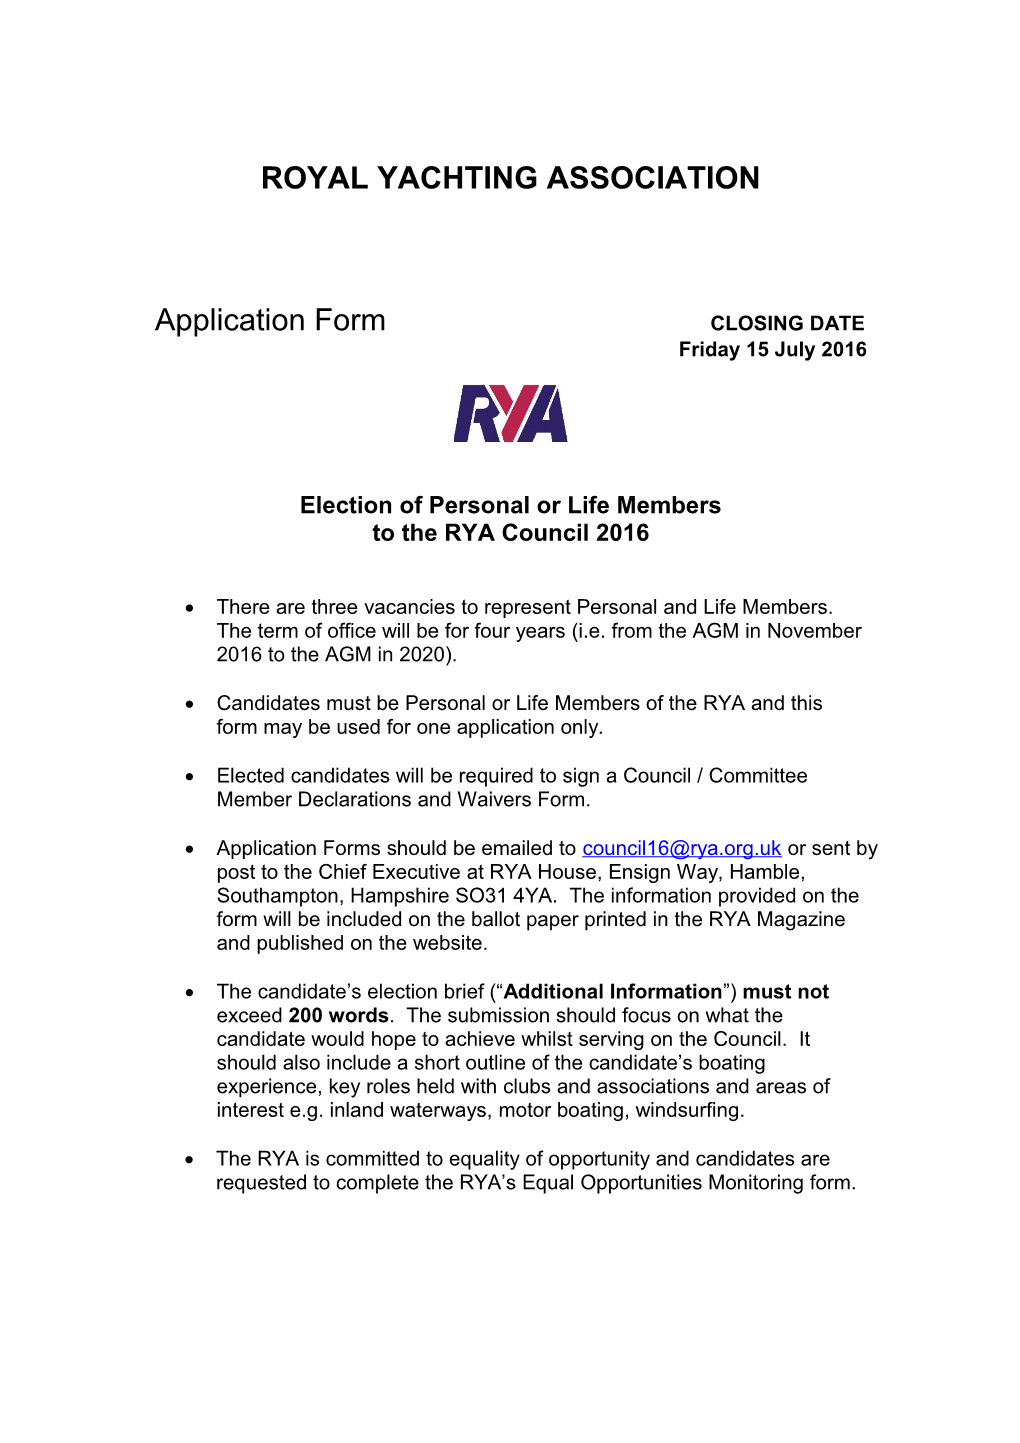 Council Nomination Form